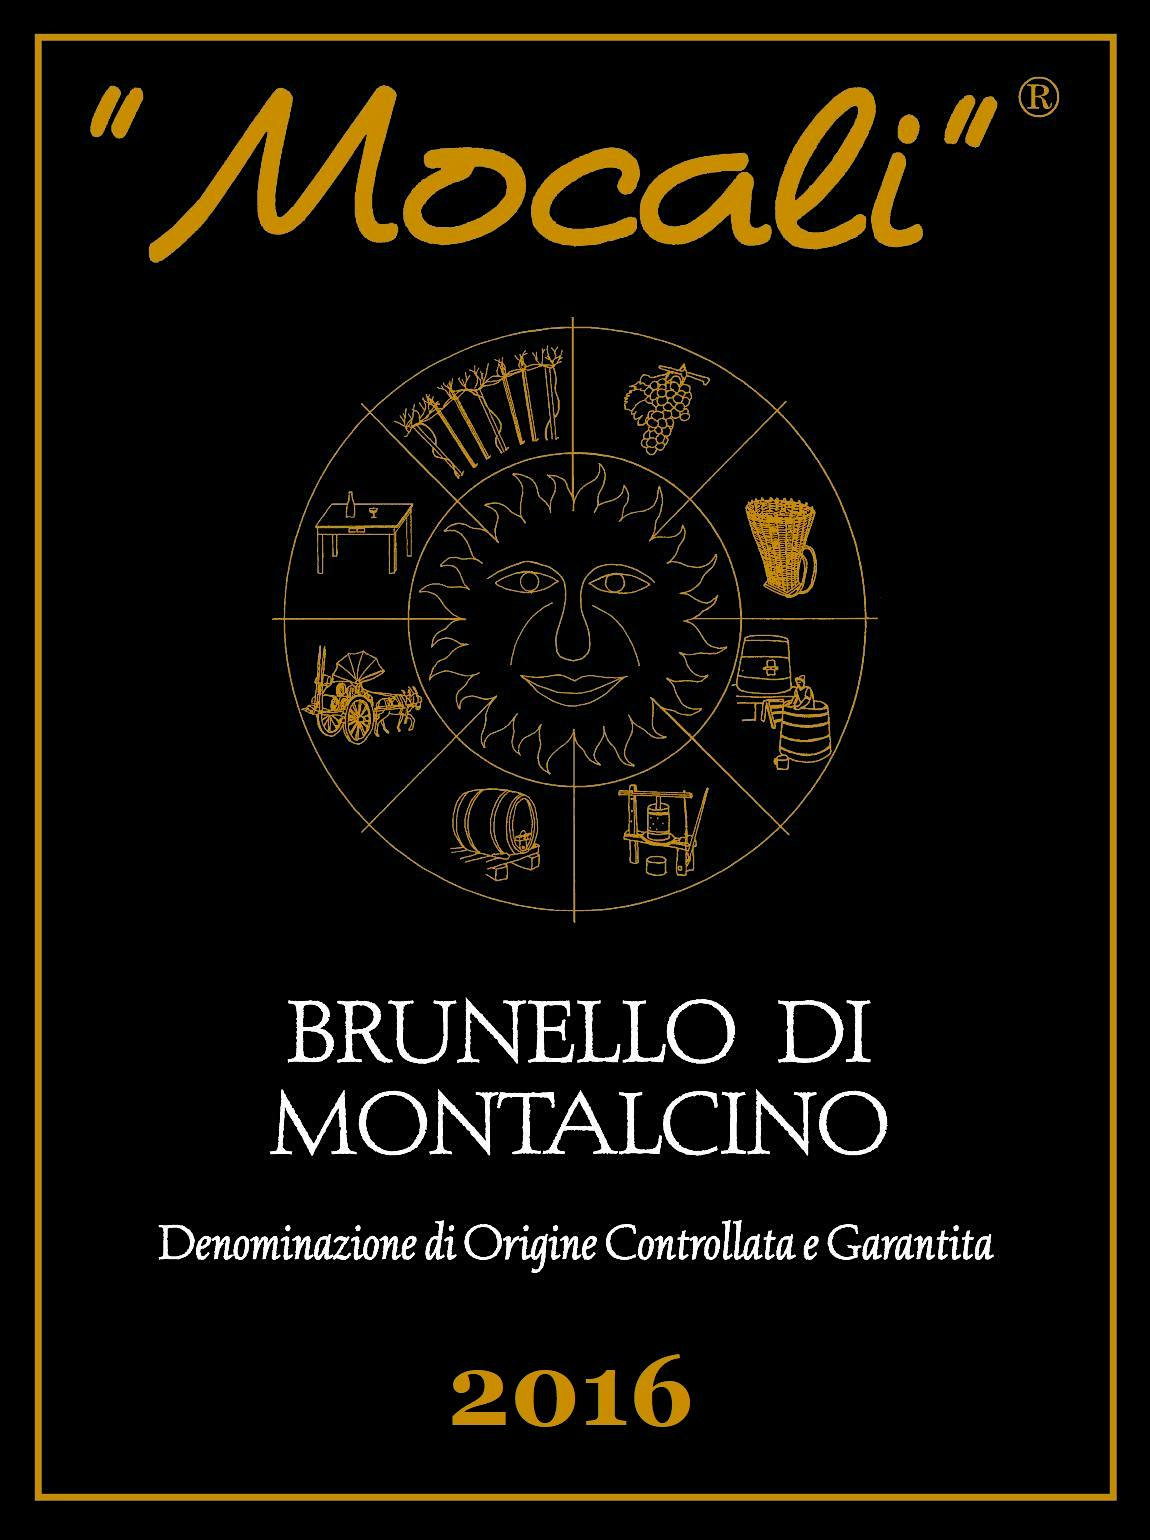 Label for Mocali